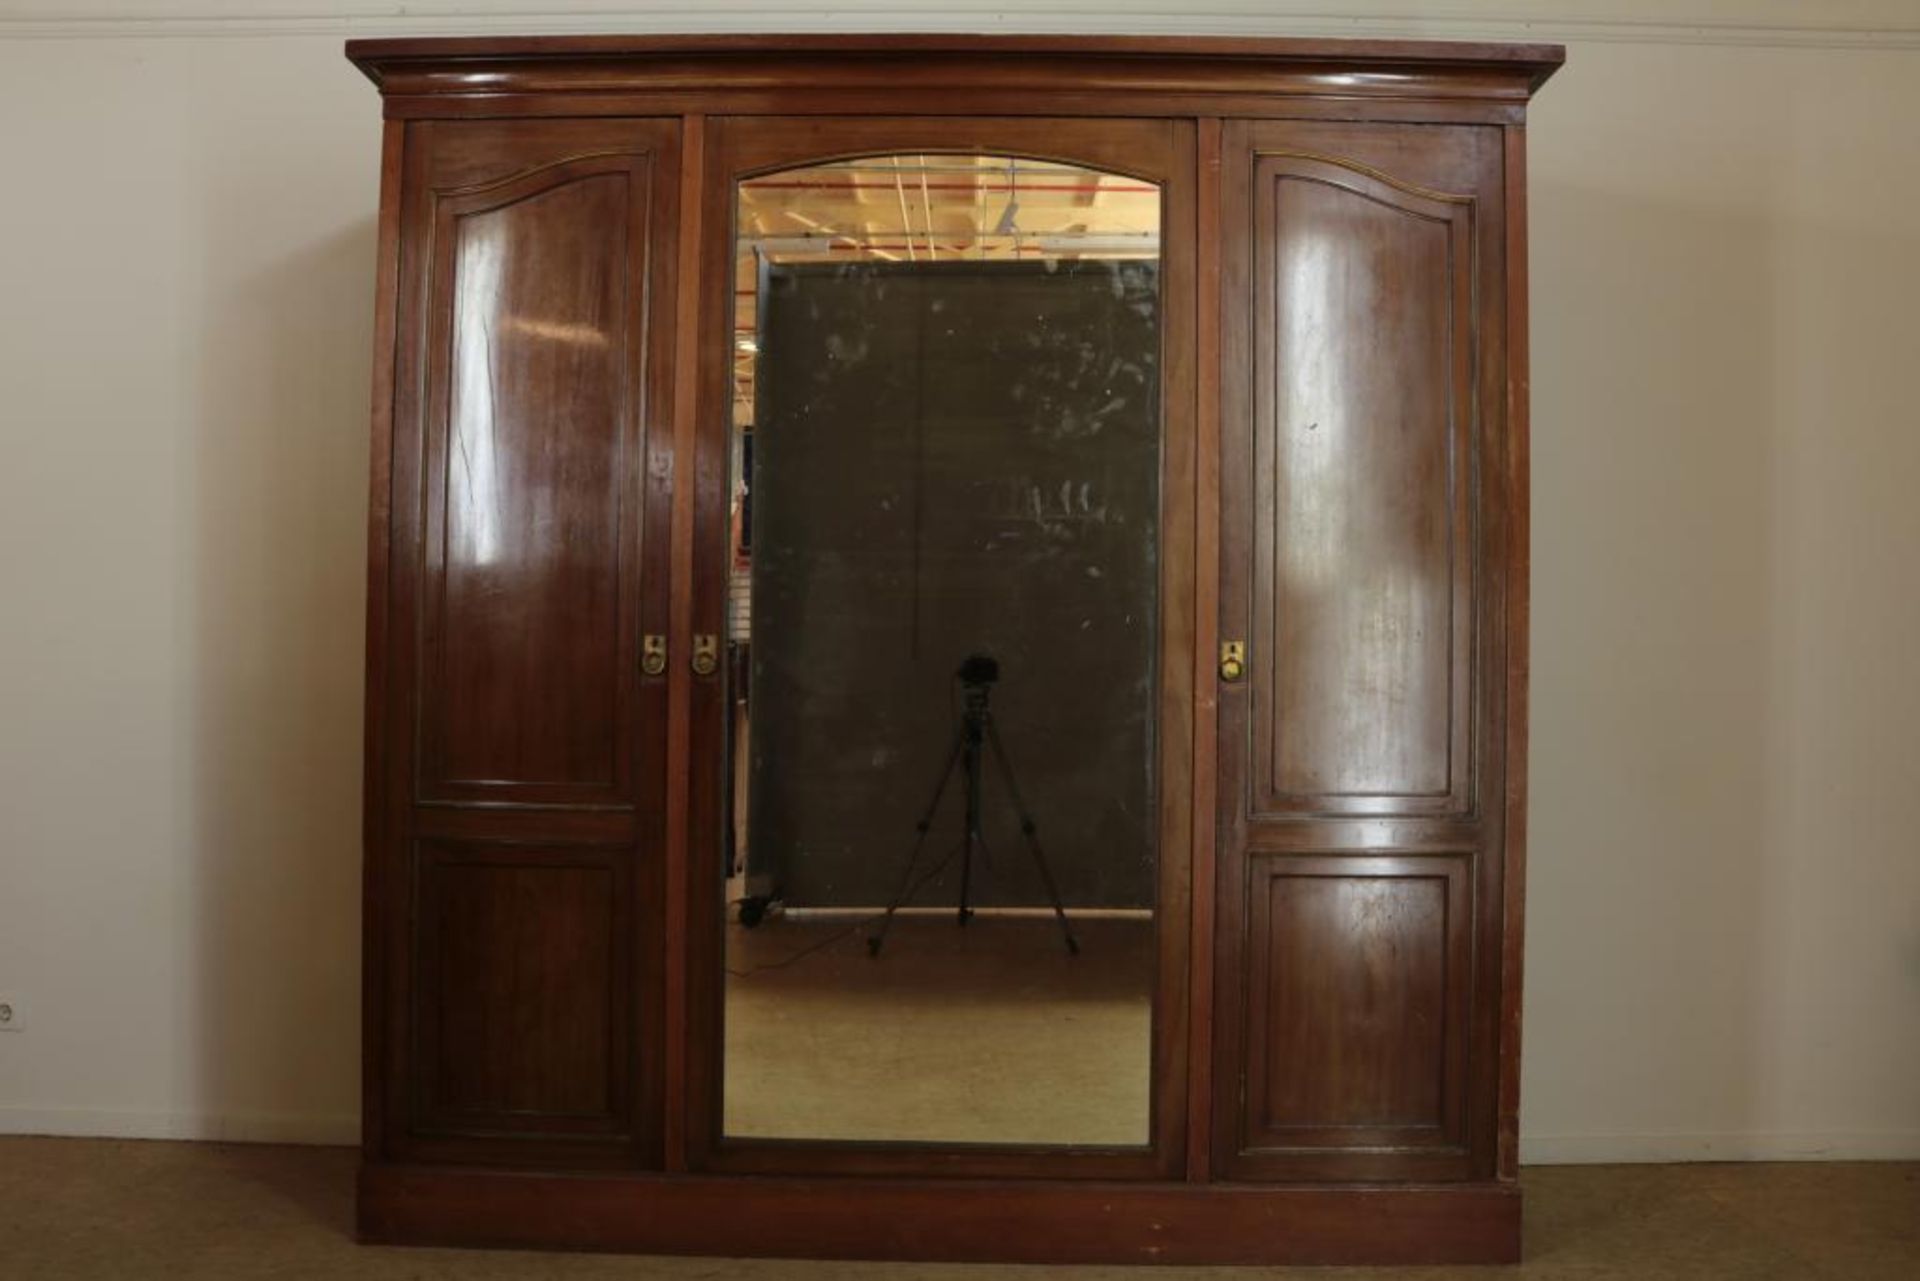 Noten linnenkast met middelste deur de spiegel in de buitenkant, twee deuren ernaast spiegeldeur aan